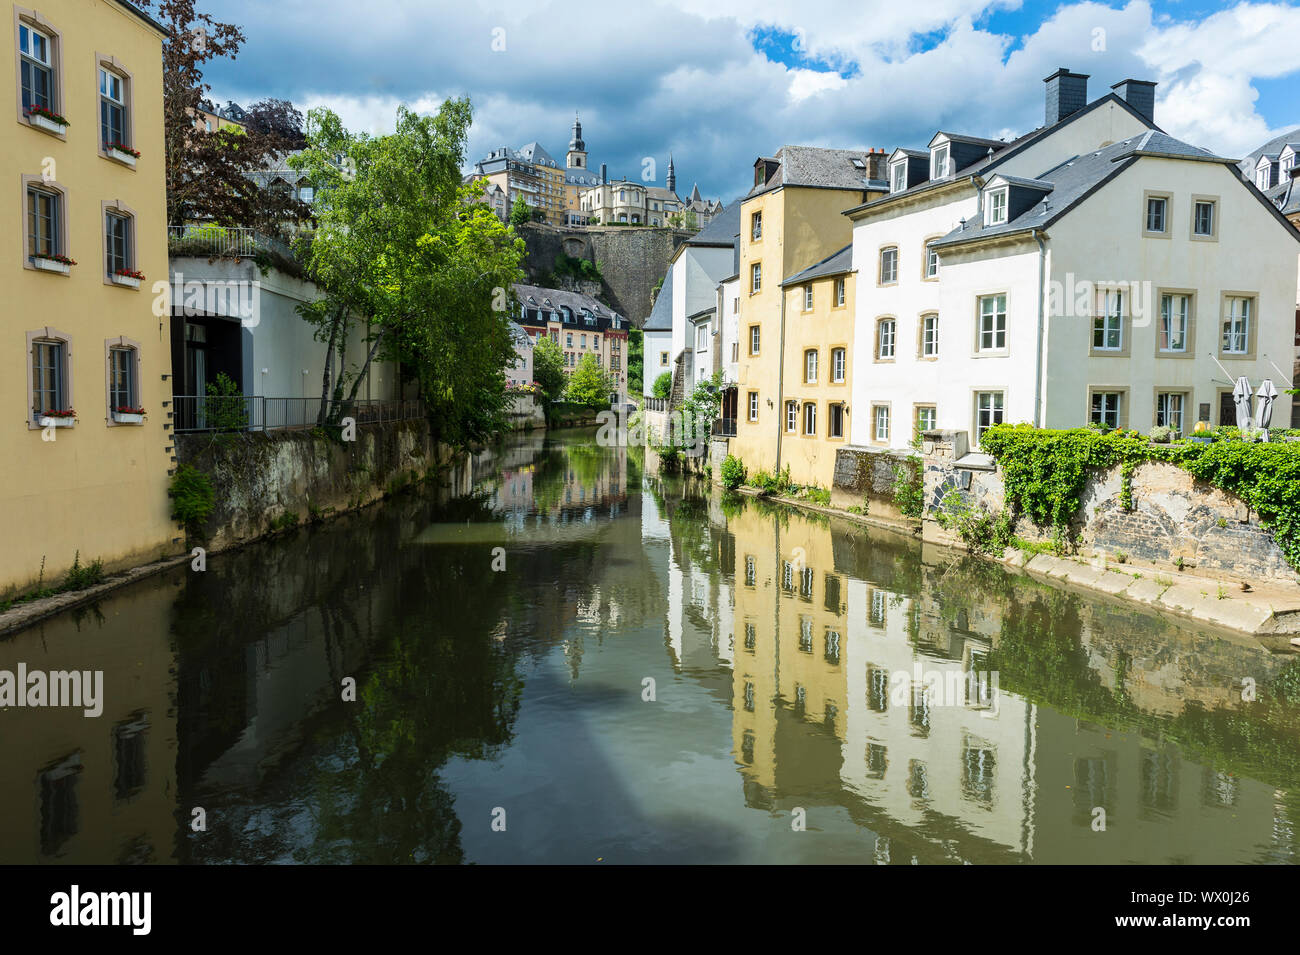 La vieille ville de Luxembourg, l'UNESCO World Heritage Site, Luxembourg, Europe Banque D'Images